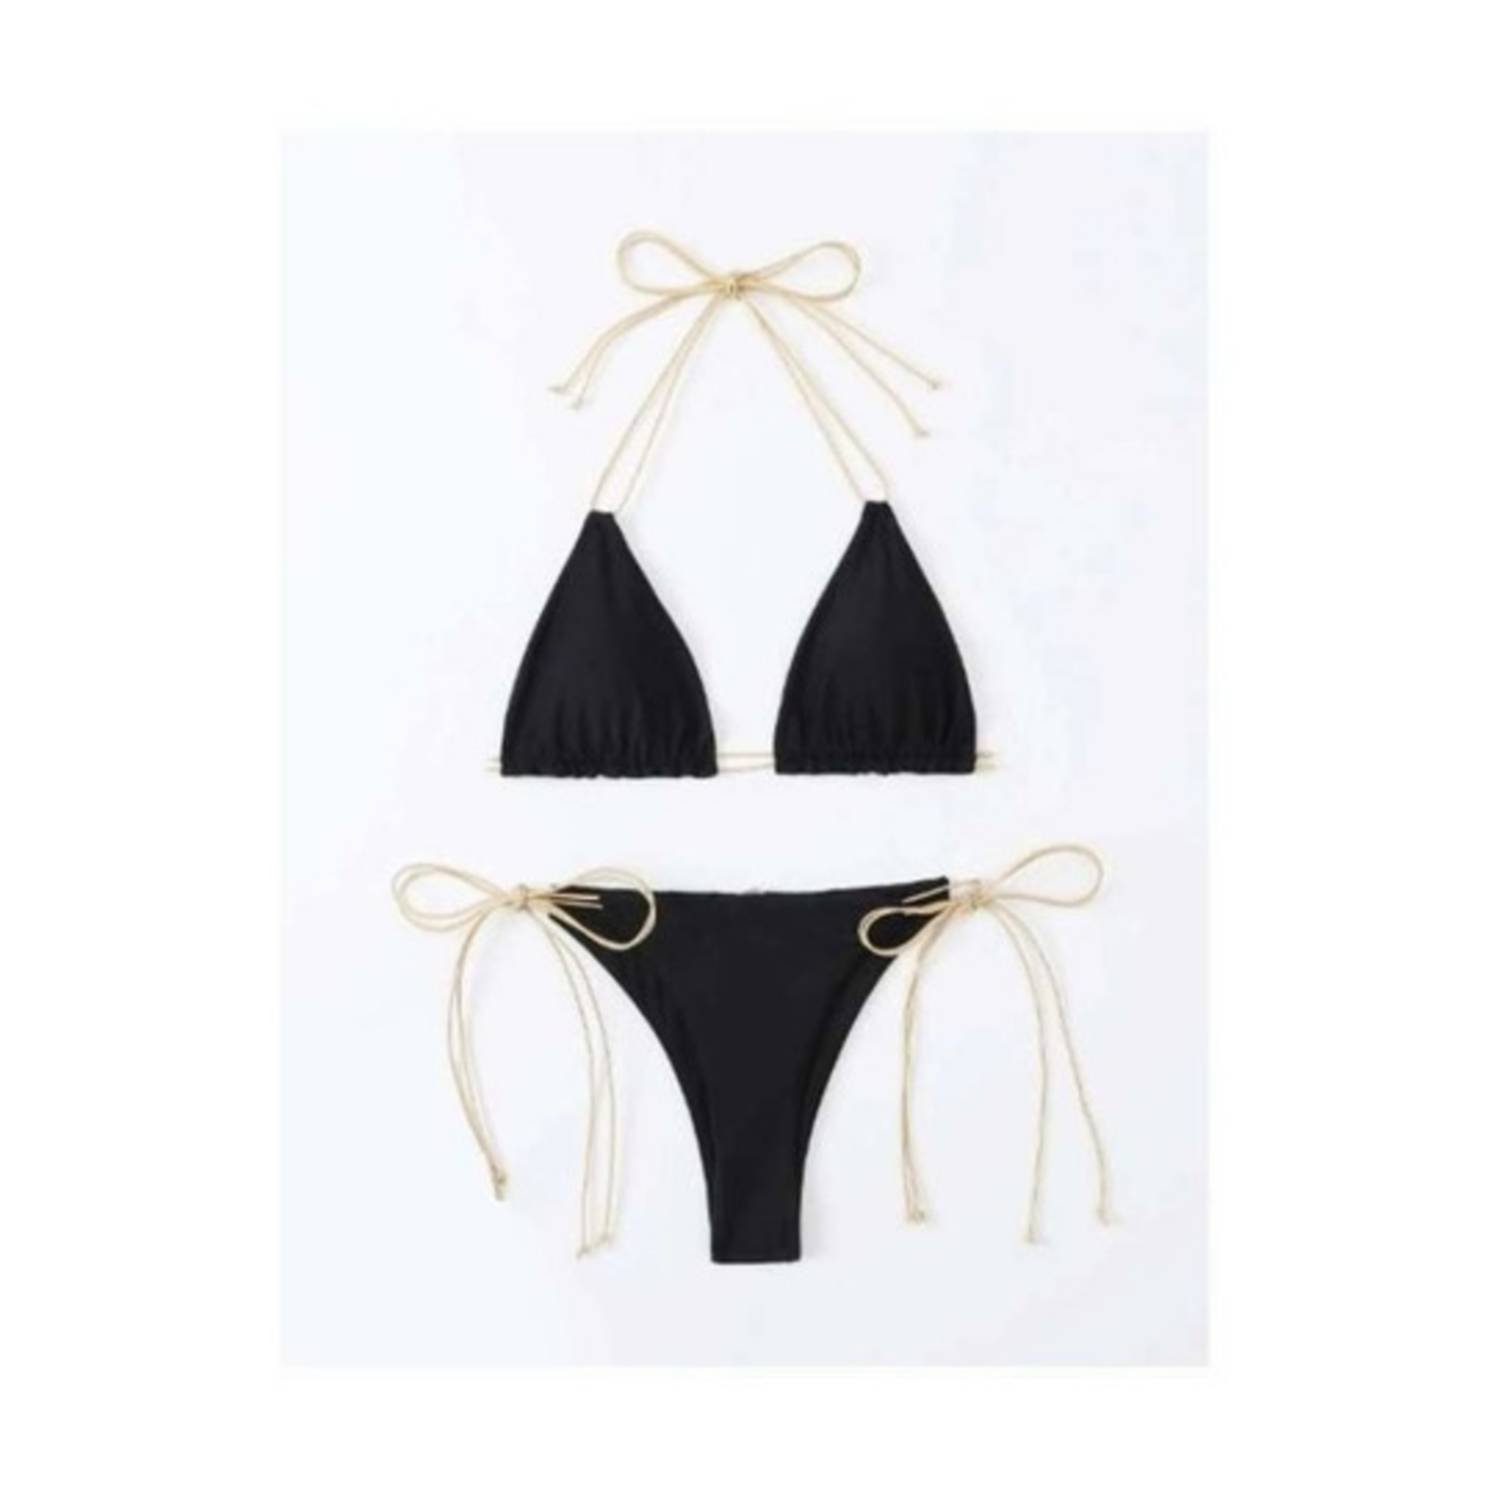 Traje de baño tipo bikini tipo straple con aros metálicos dorados y tiras  removibles - BECO